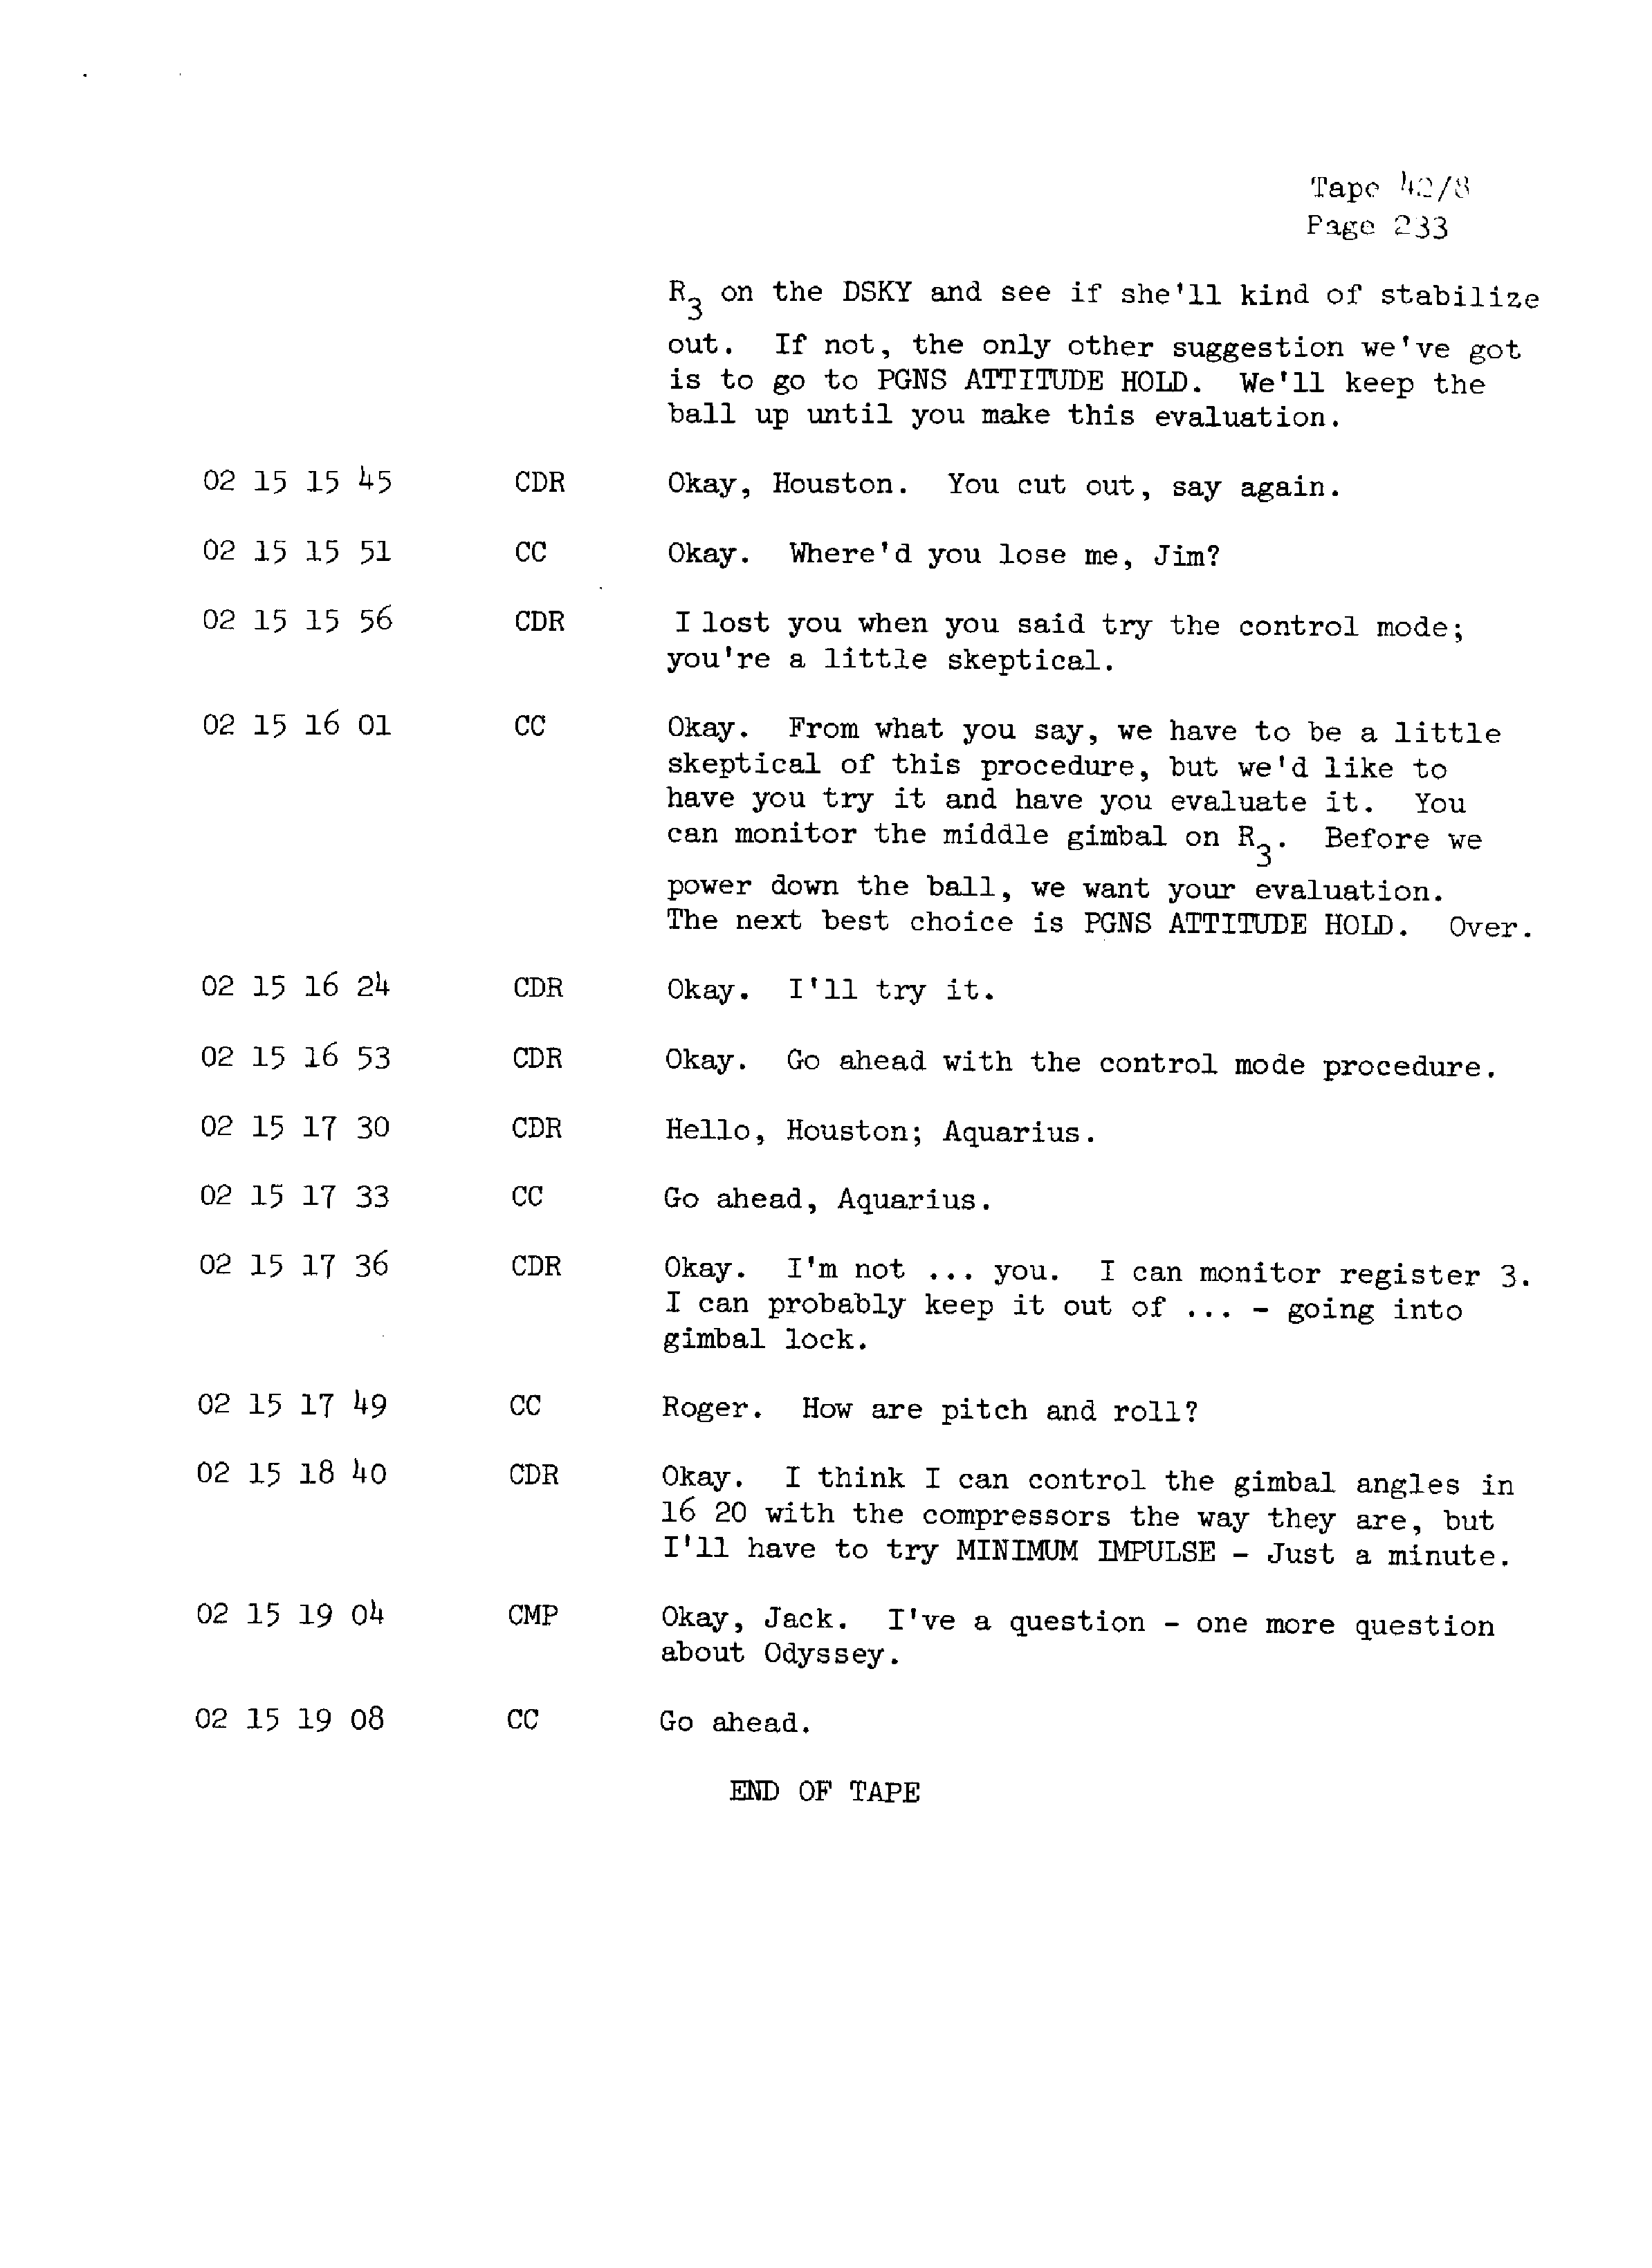 Page 240 of Apollo 13’s original transcript